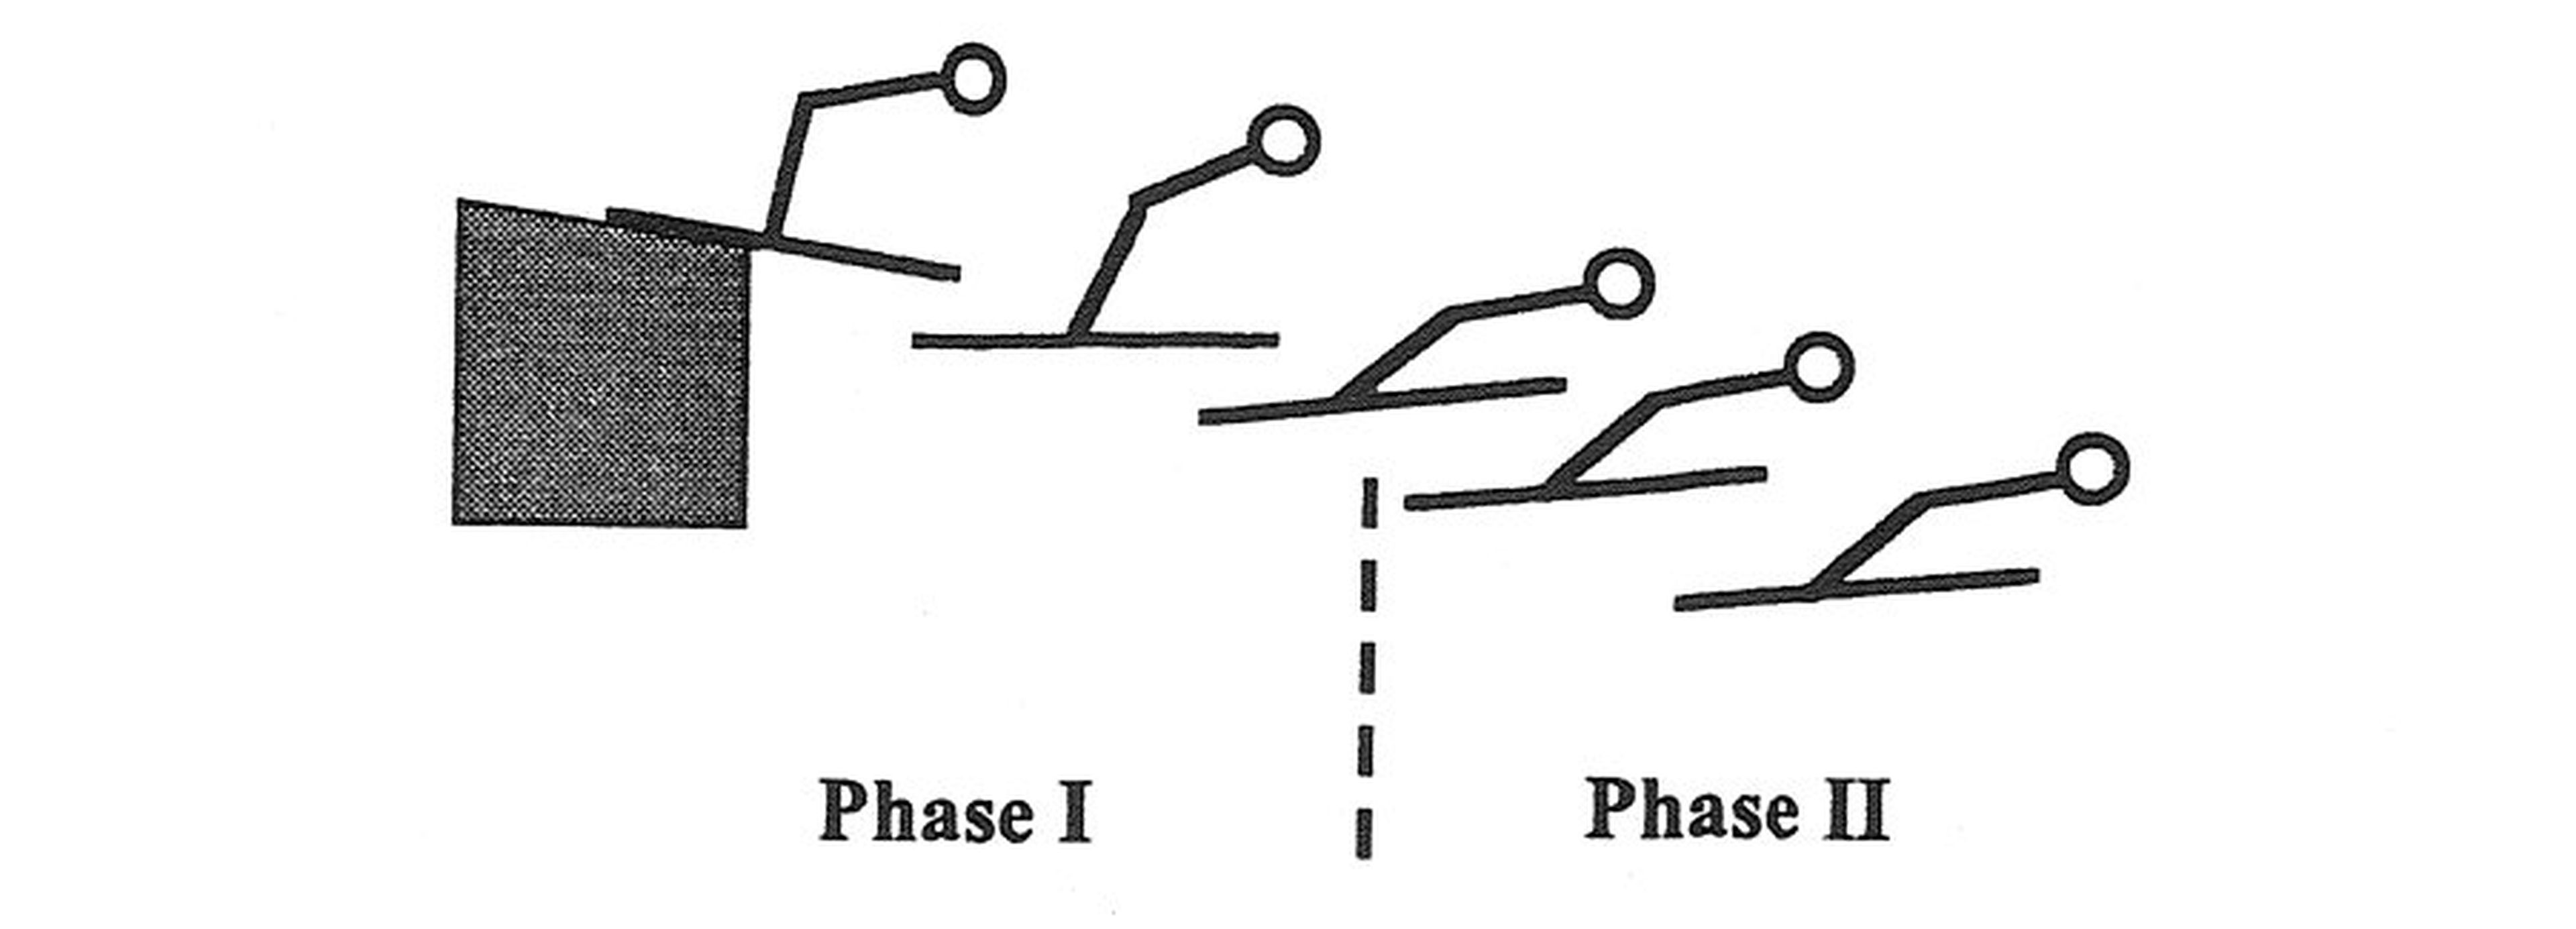 Hay dos fases durante el vuelo en el salto de esquí. En la Primera Fase, el cuerpo del saltador adopta una posición rápidamente. En la Segunda Fase, el saltador completa la posición final creando la figura en "V".